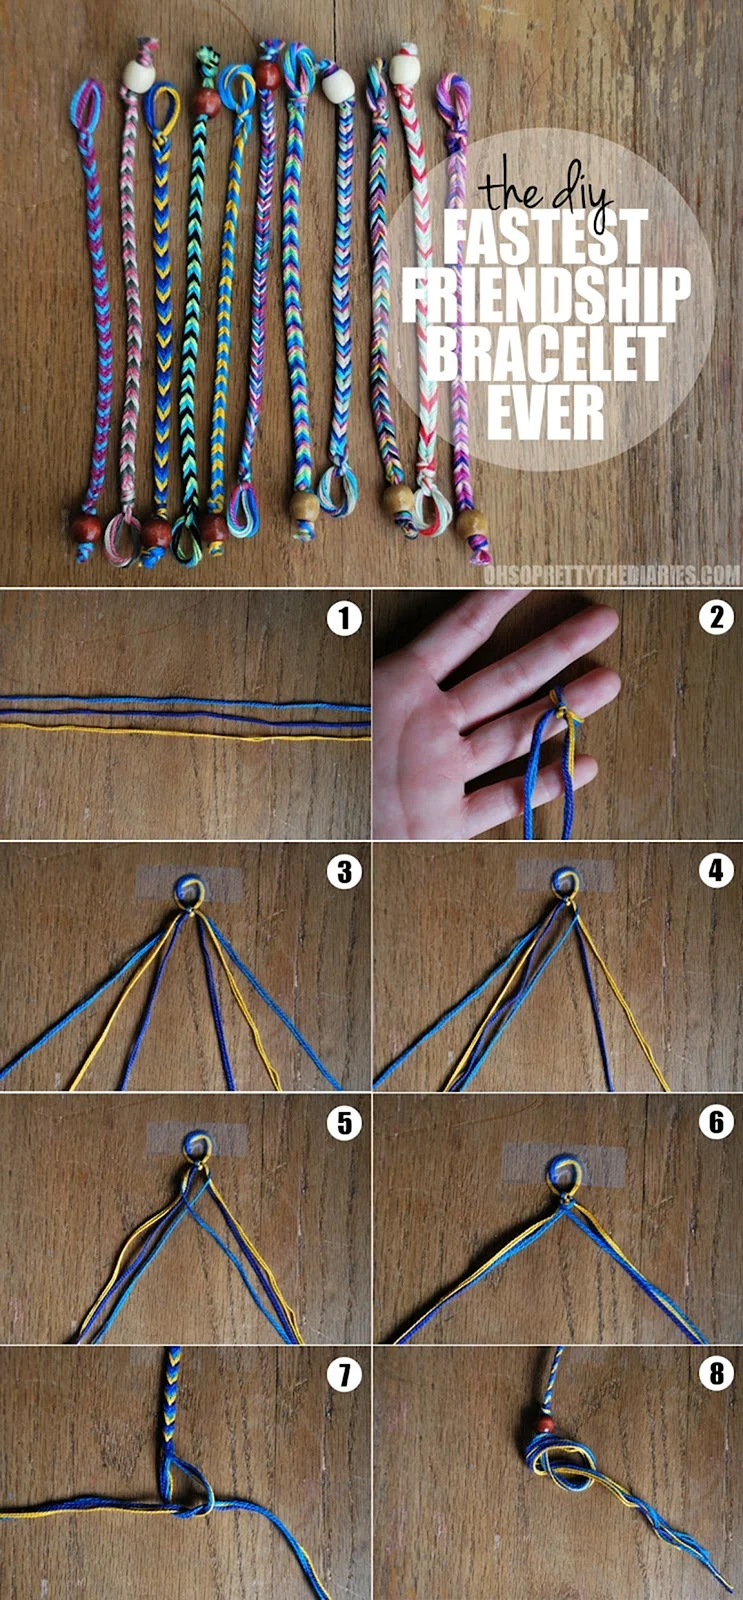 Плетеные браслеты из ниток